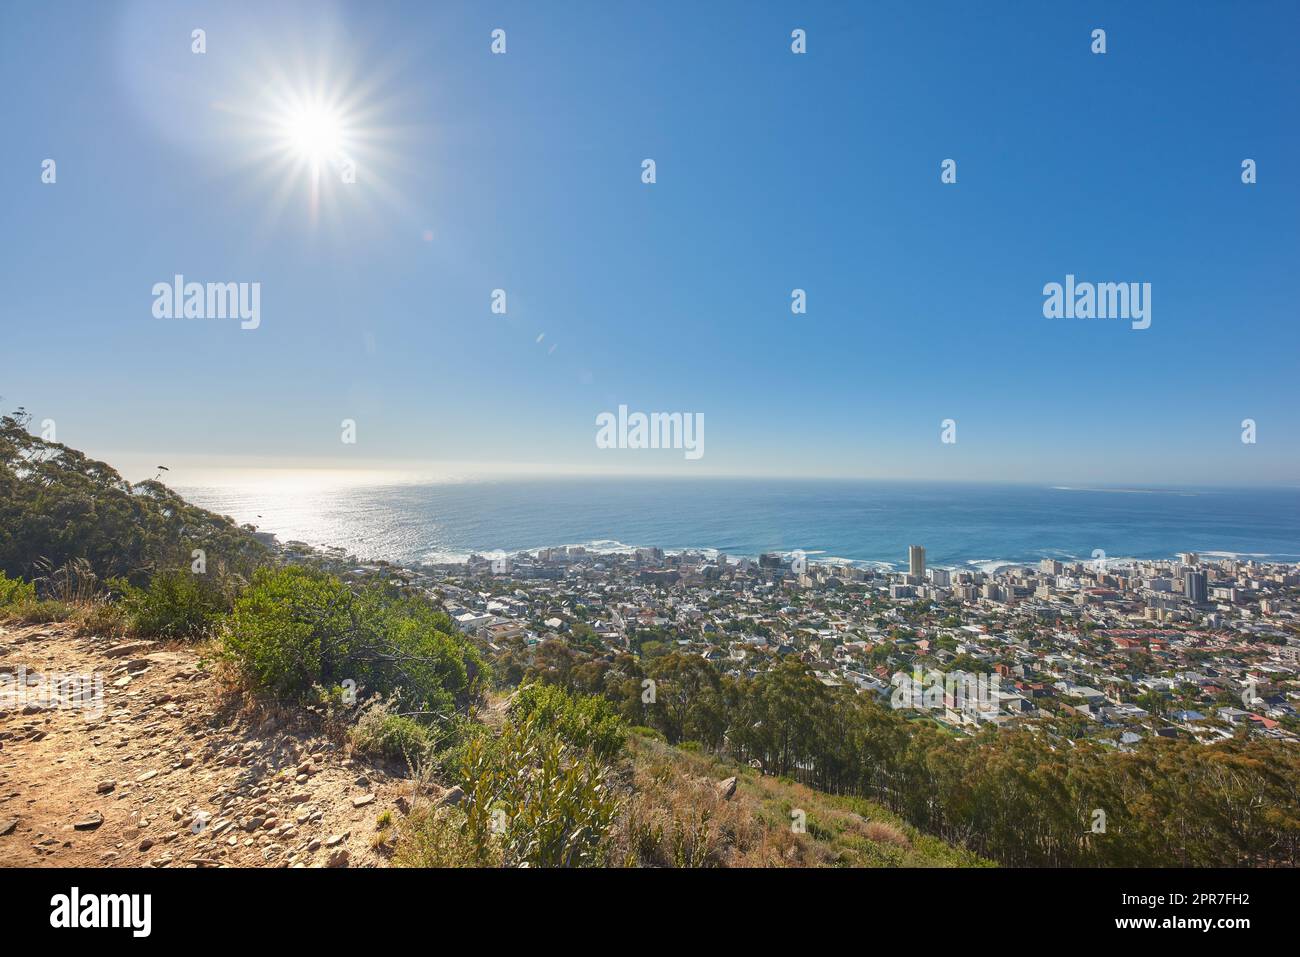 Copy Space mit Blick vom Tafelberg in Kapstadt Südafrika auf einen klaren blauen Himmel über einer Küstenstadt. Malerische Landschaft mit Gebäuden in einer Stadt entlang der Berge und des Meeres an einem sonnigen Tag Stockfoto